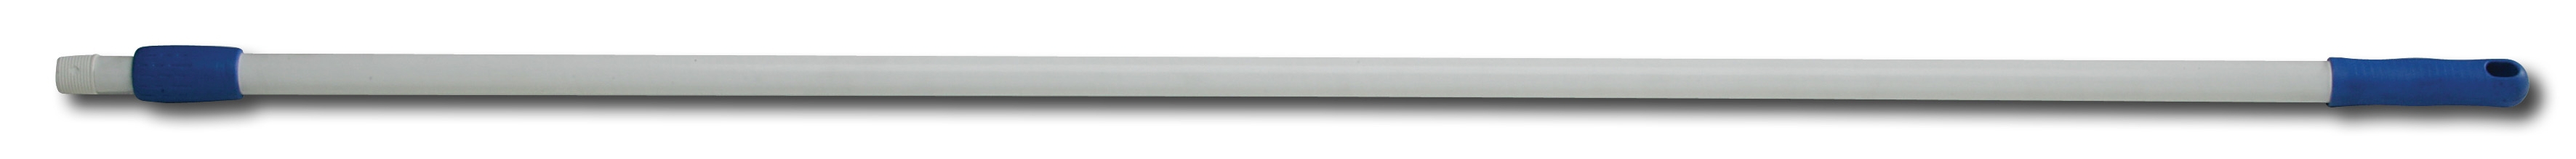 Aluminium telescopic threaded handle 2 x 1 m